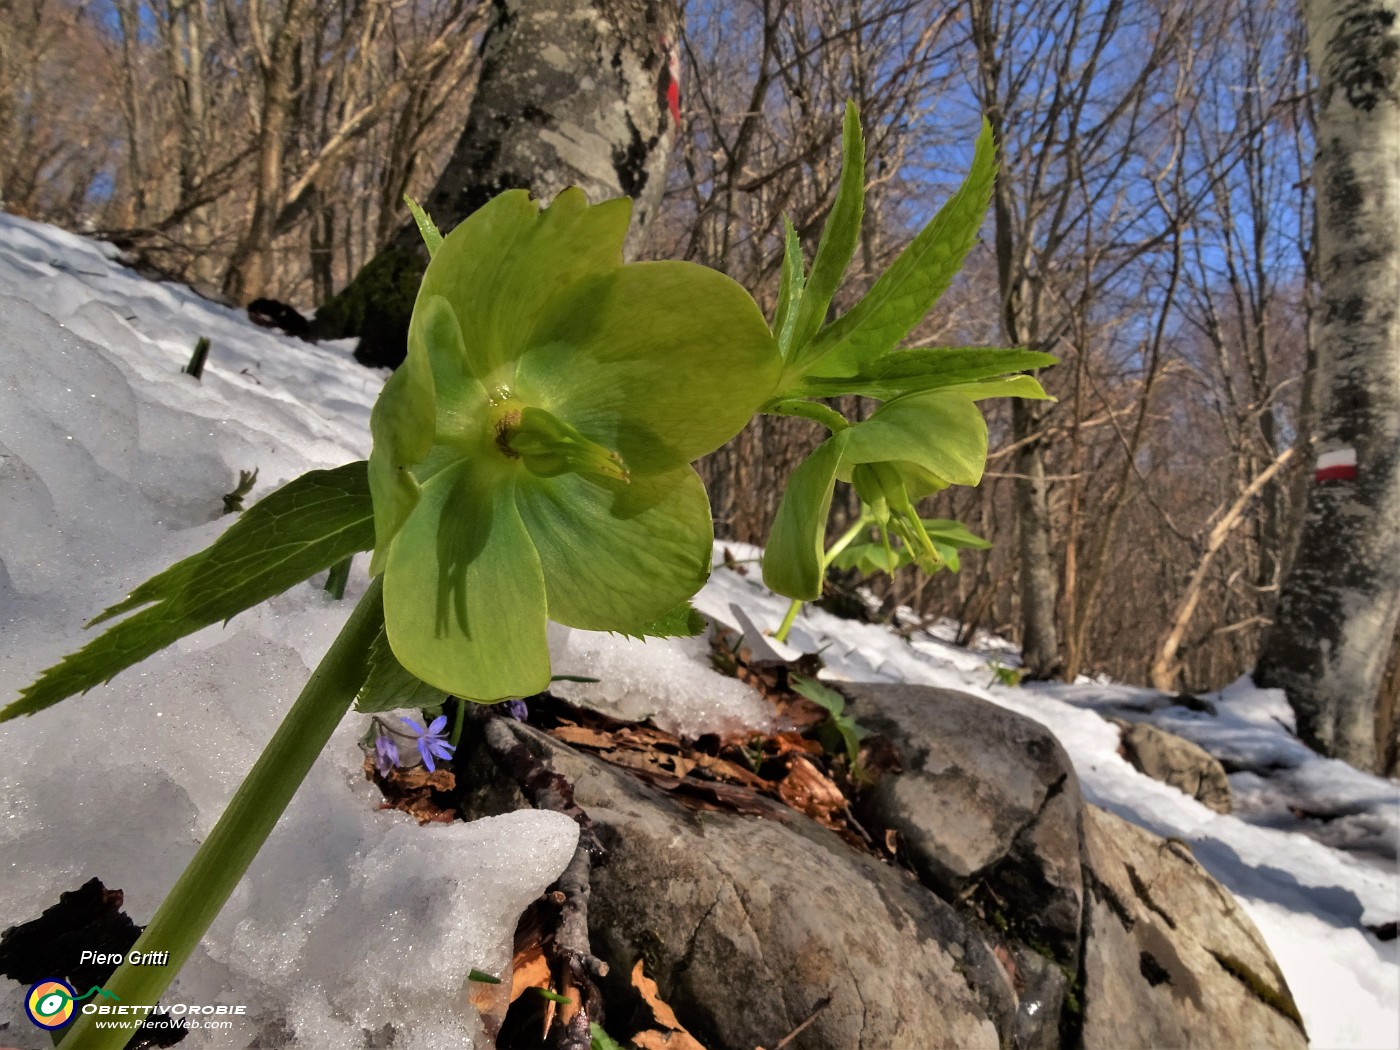 54 Ellebori verdi (Helleborus viridis) si fanno spazio tra la neve.JPG